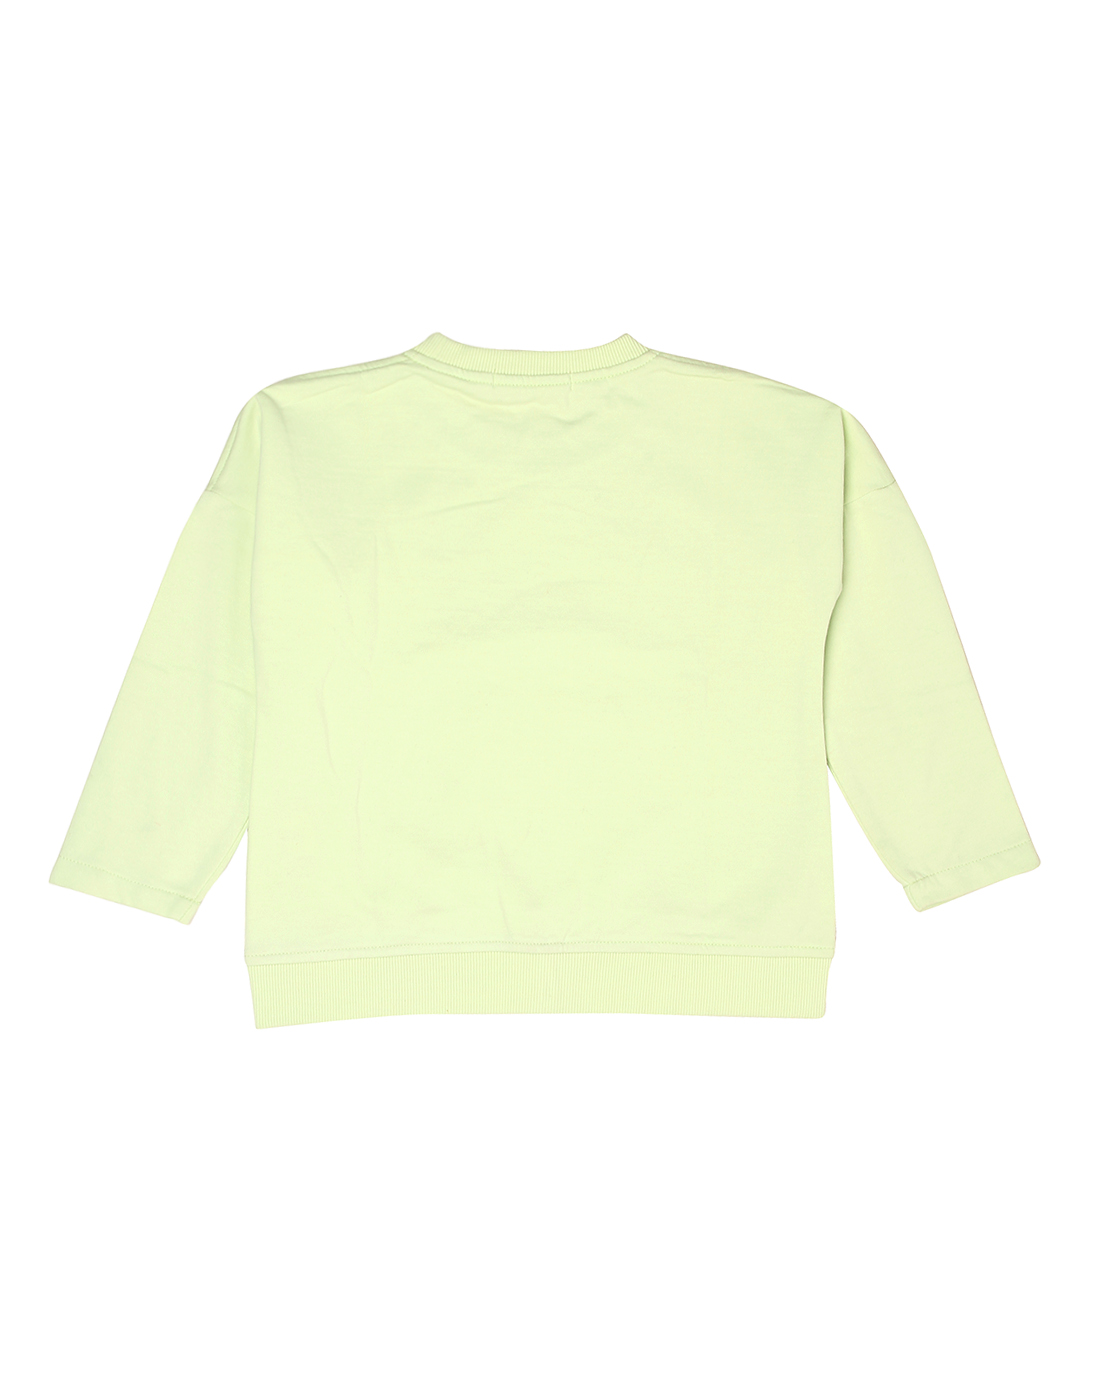 Wingsfield Girls Light Green Sweatshirt